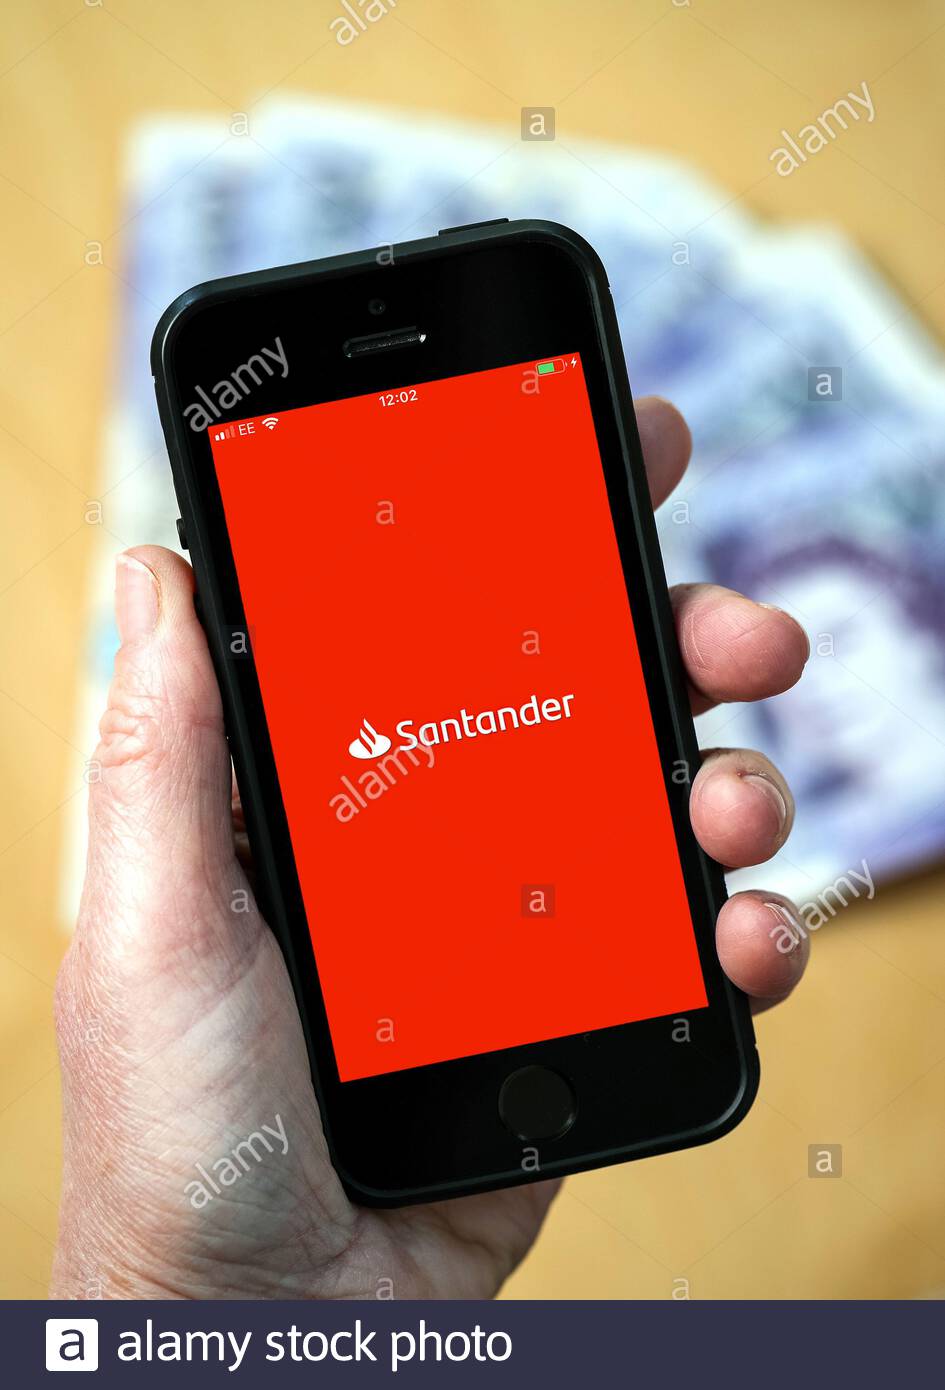 santander app for mac